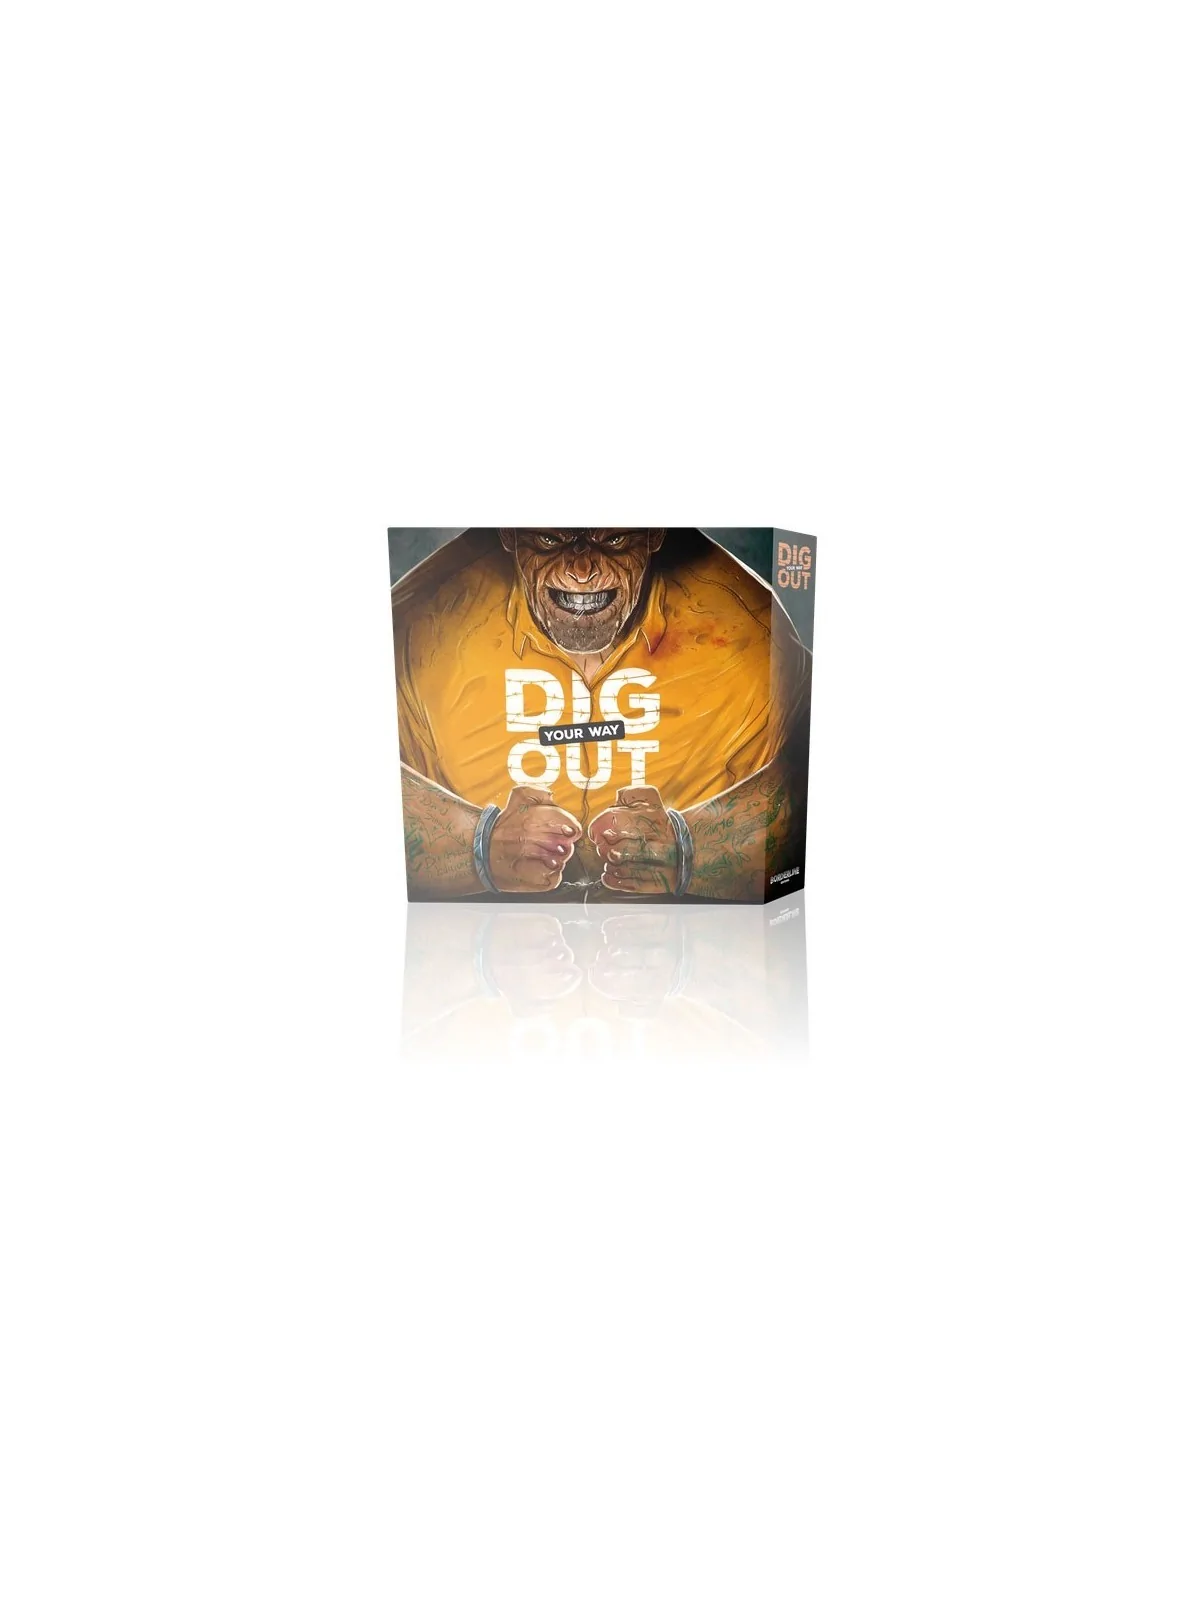 Comprar Dig Your Way Out barato al mejor precio 35,96 € de Gen X Games